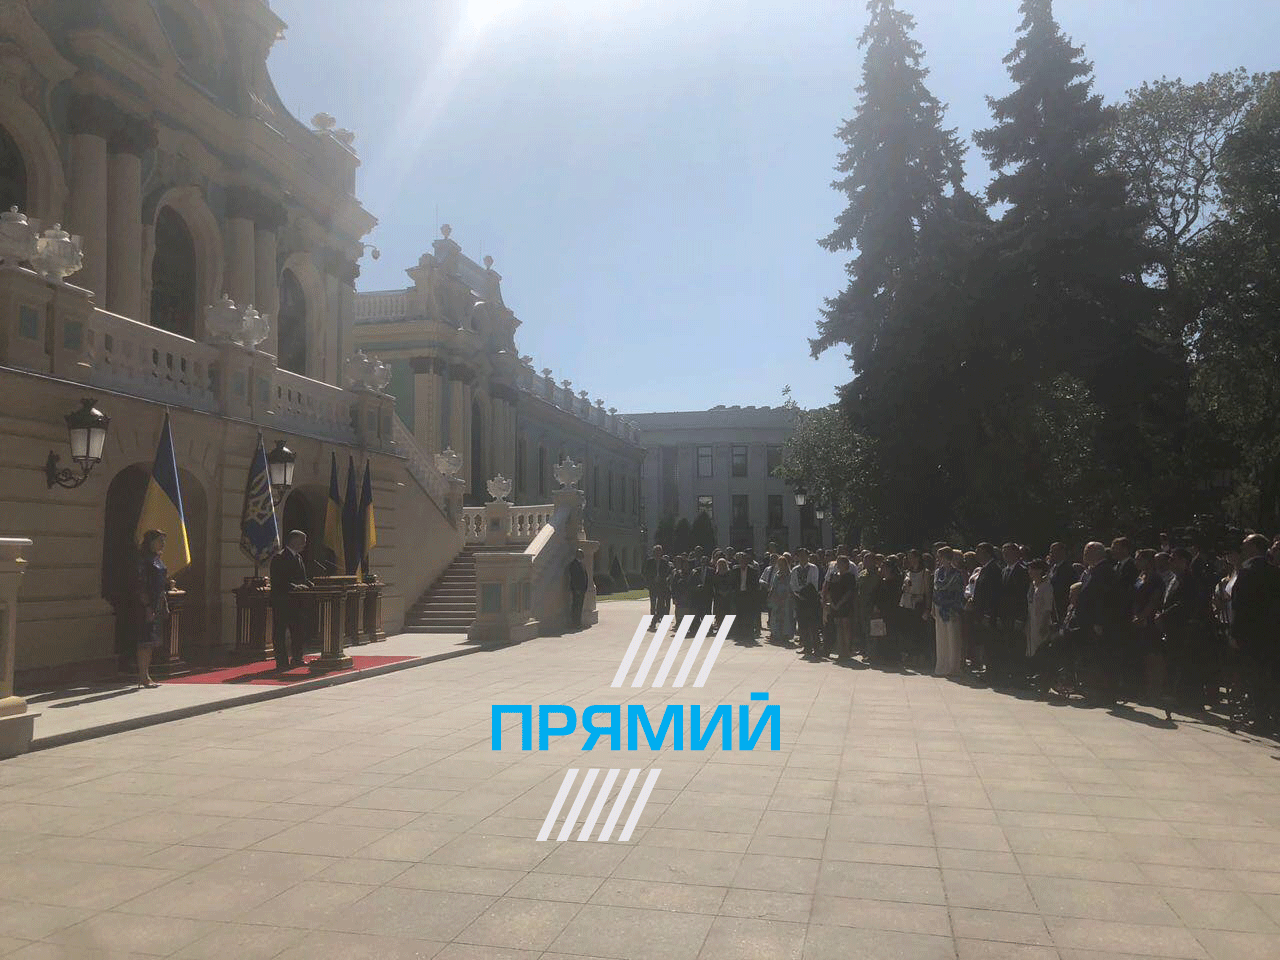 Мариинский дворец, Ульяна Супрун, закрытый прием Порошенко, как в Киеве празднуют День независимости Украины, власти отметили День независимости Украины